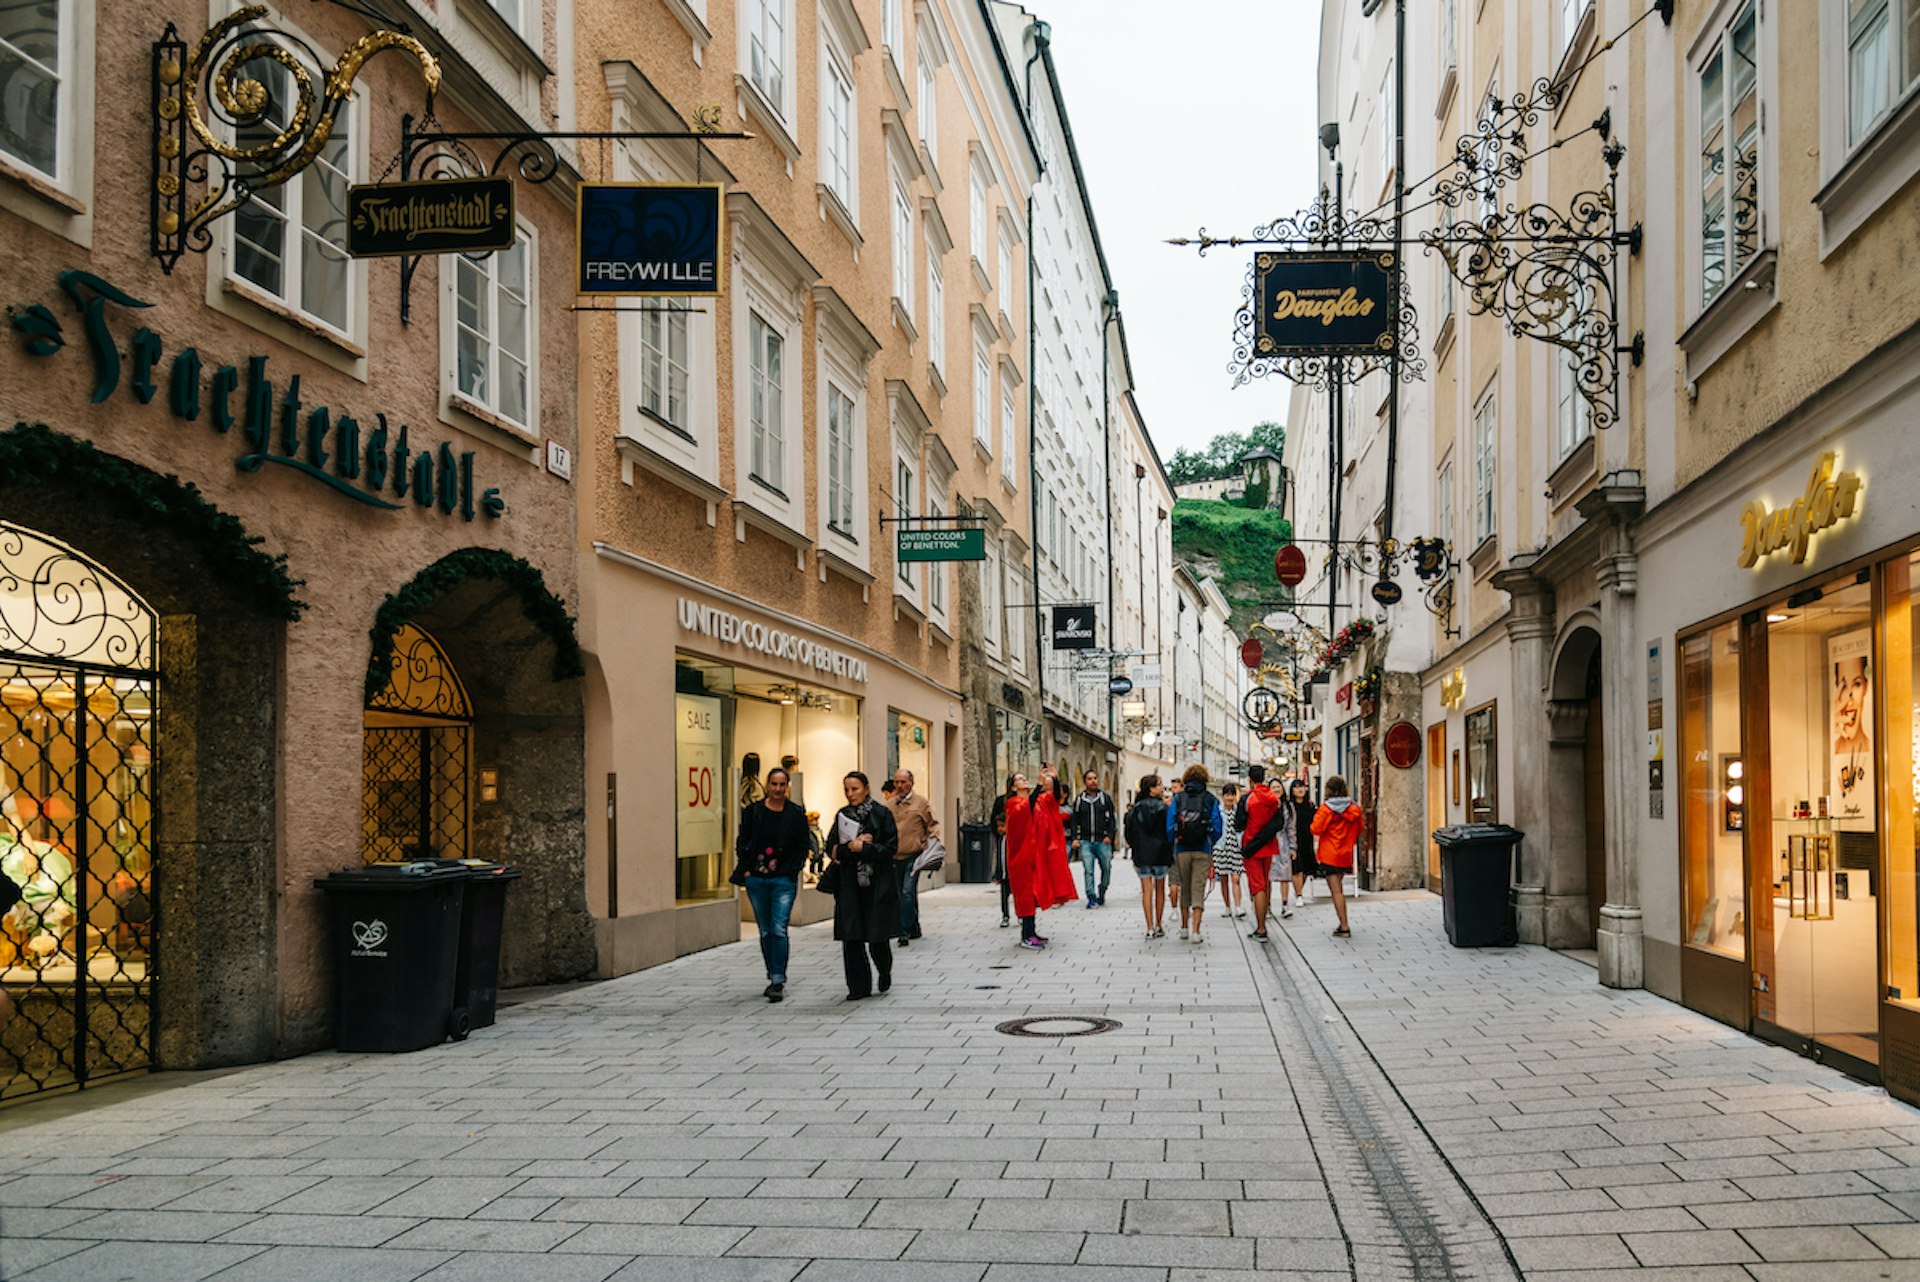 Pedestrians walk by shops in Getreidegasse, Salzburg, Austria